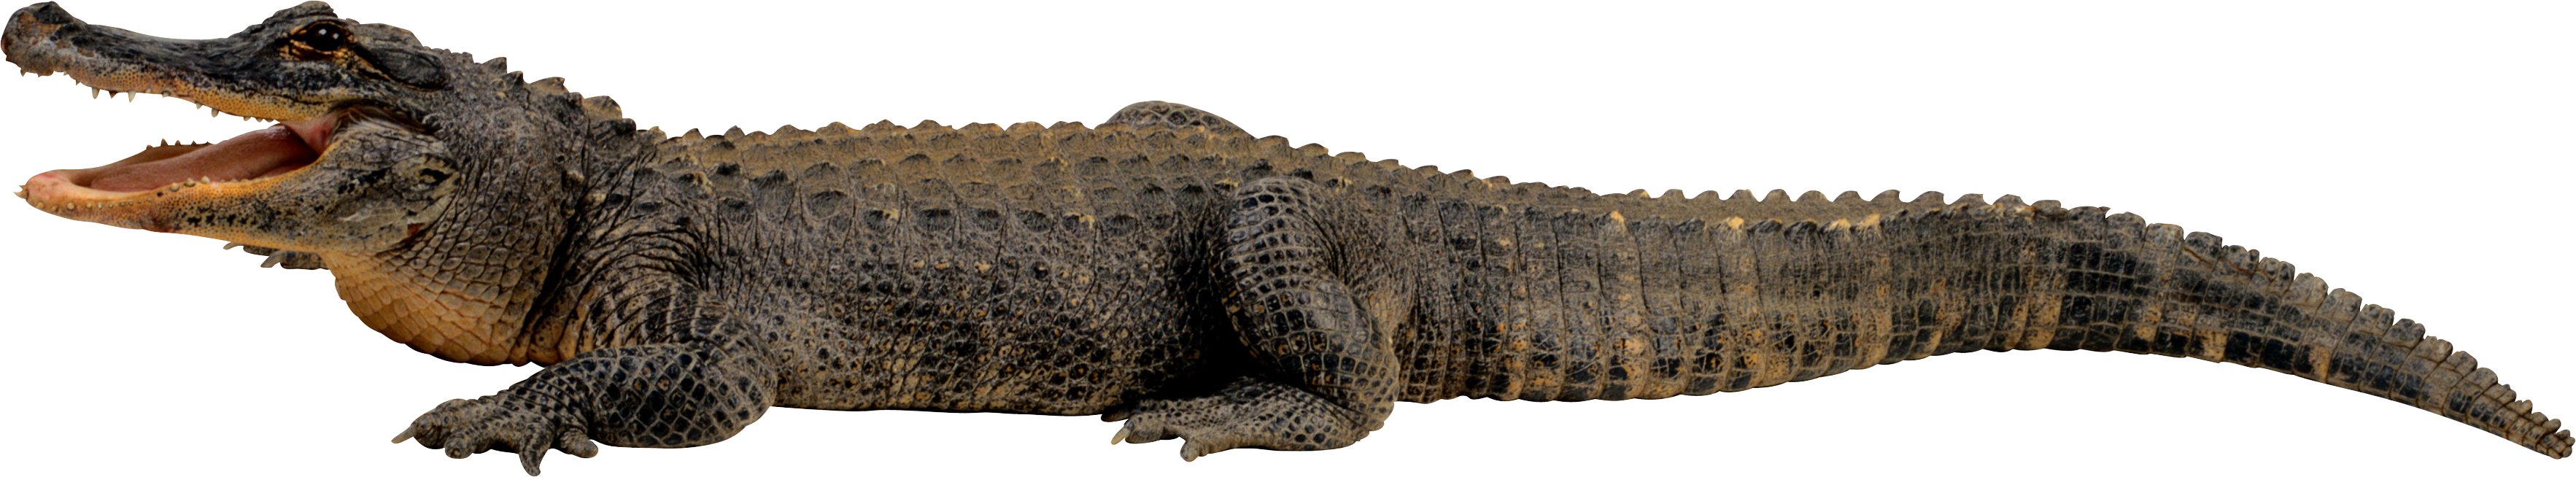 PNG Crocodile - 133482